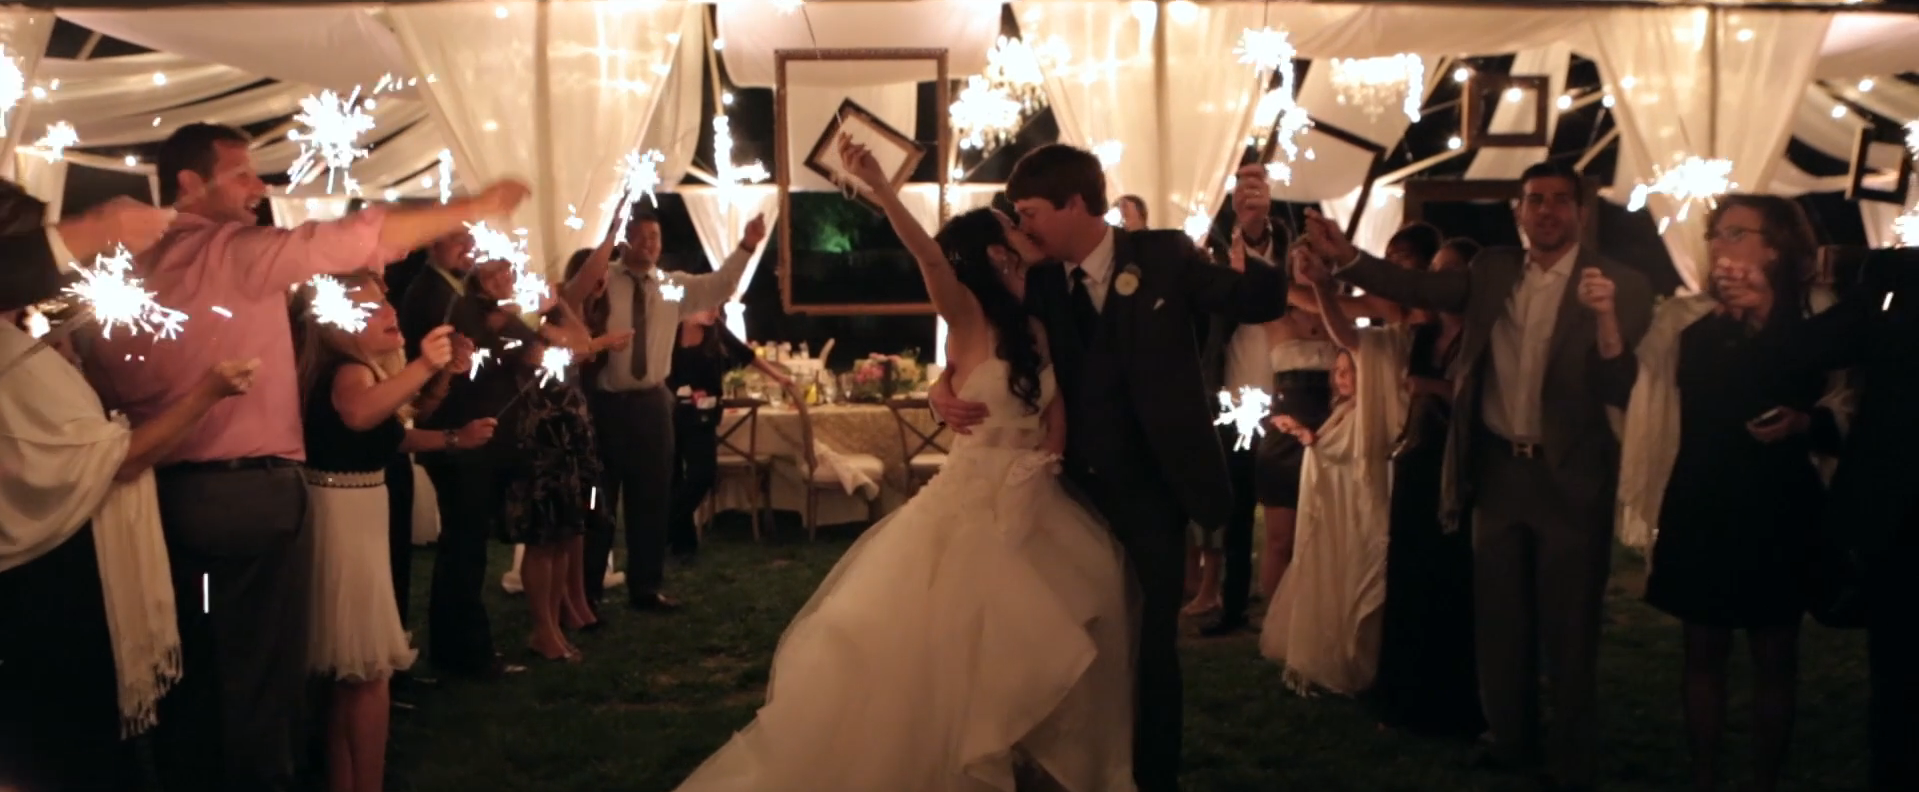 2015 08 25 1526 - A Whimsical Ojai Valley Inn & Spa Wedding Video